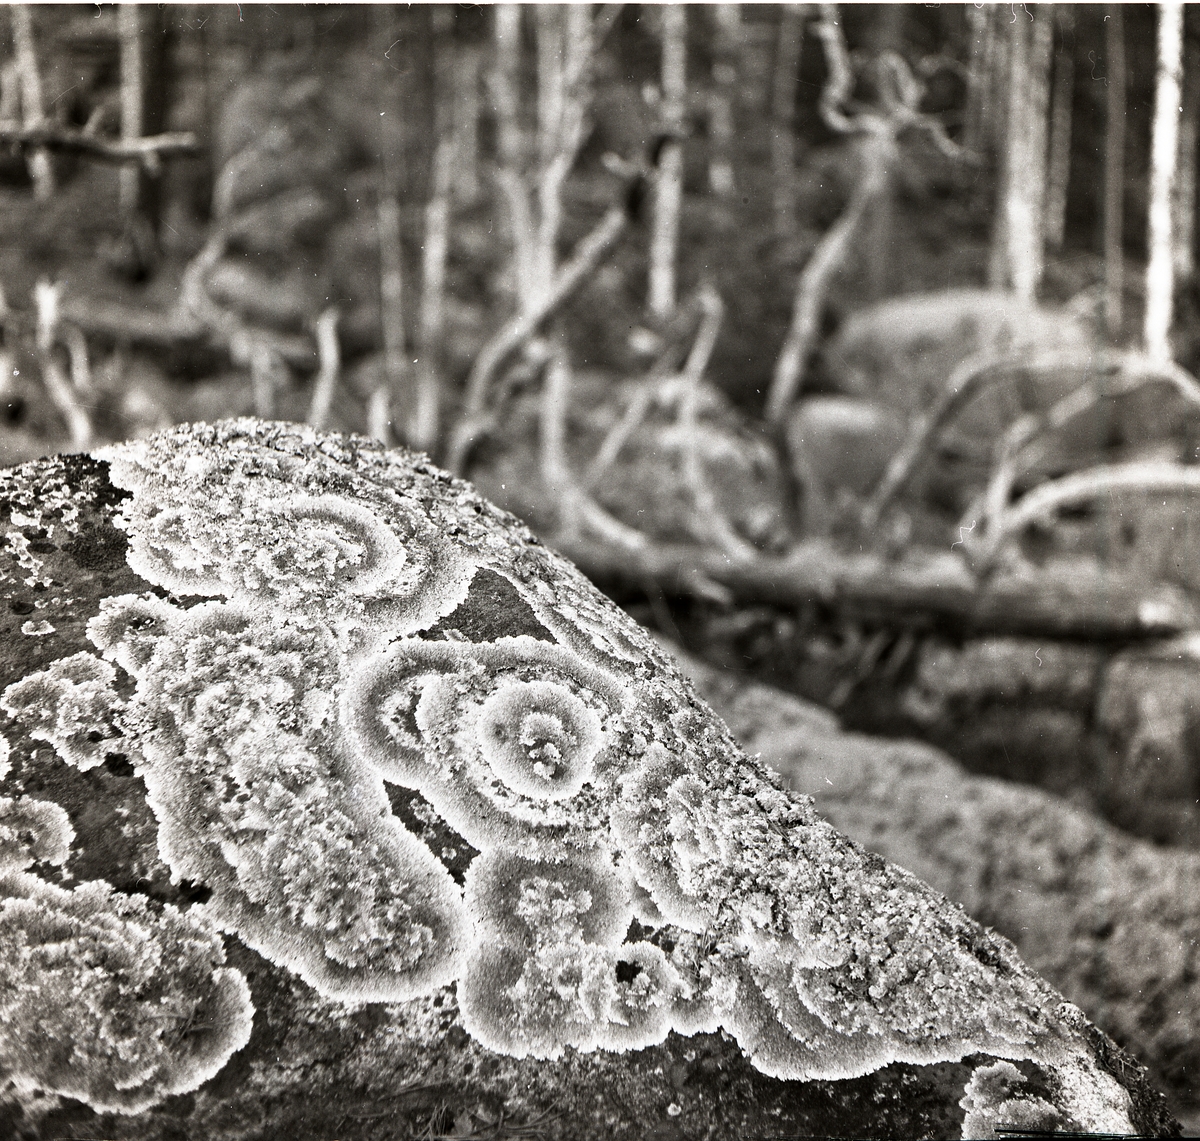 Lavarnas cirkulära mönster är närmast ett naturligt konstverk där de växer på stenen. Det nedfallna döda trädet i bakgrunden ger en kuslig folksägen känsla till bilden.
Sten med mossa.